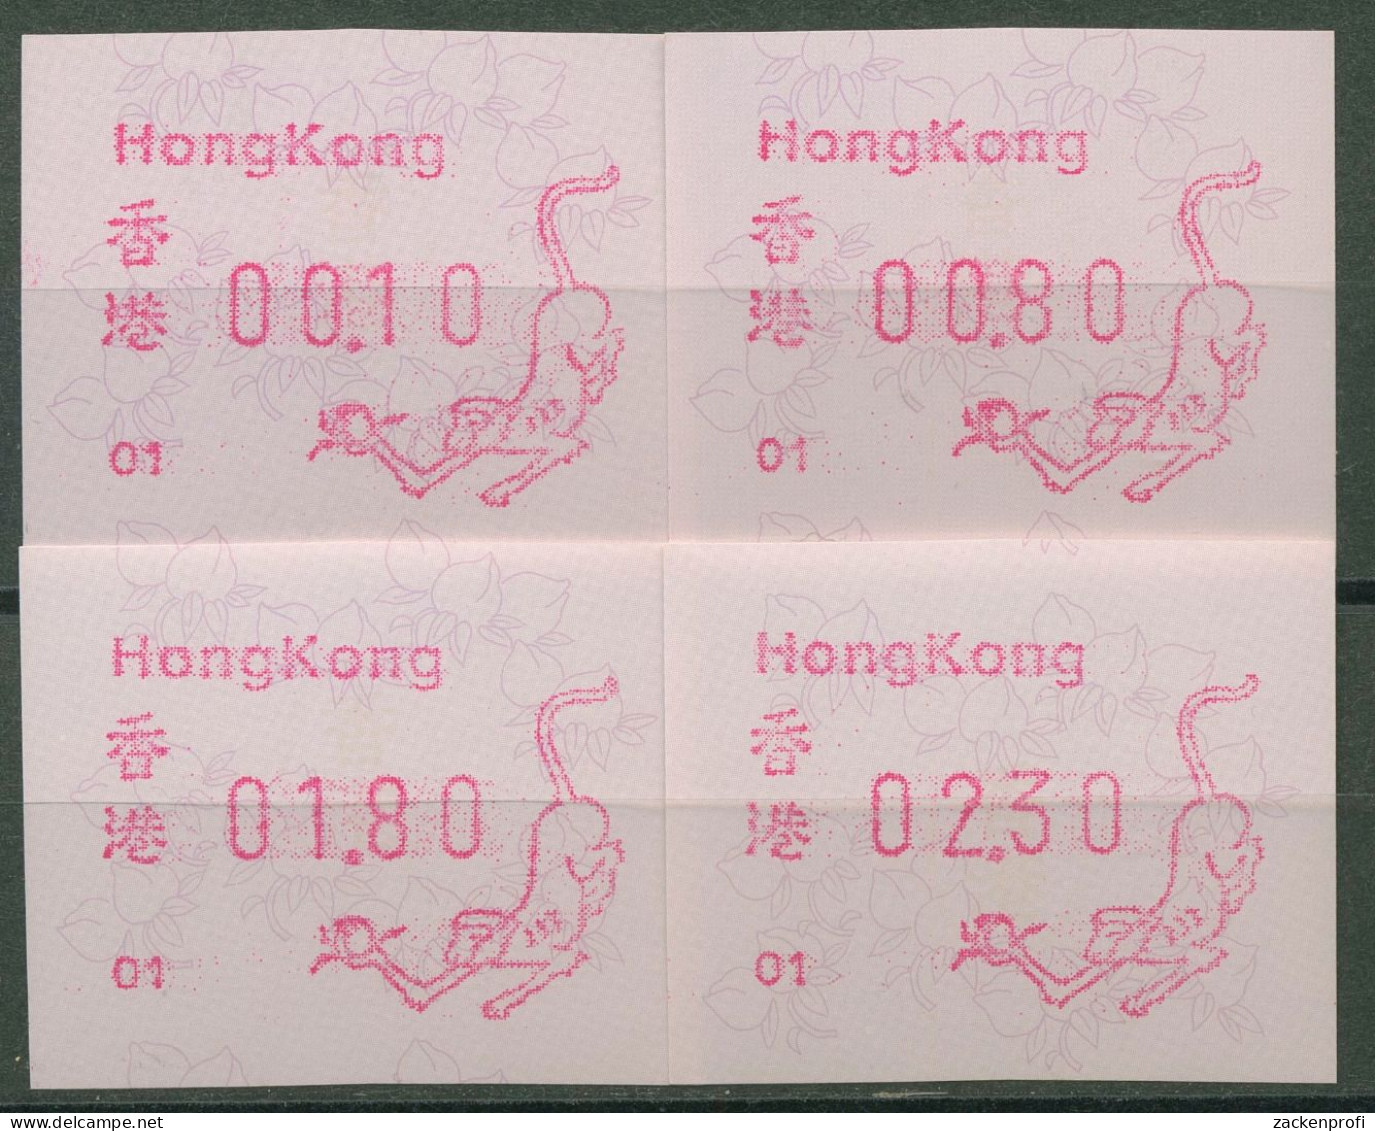 Hongkong 1992 Jahr Des Affen Automatenmarke 7.2 S1.1 Automat 01 Postfrisch - Distribuidores